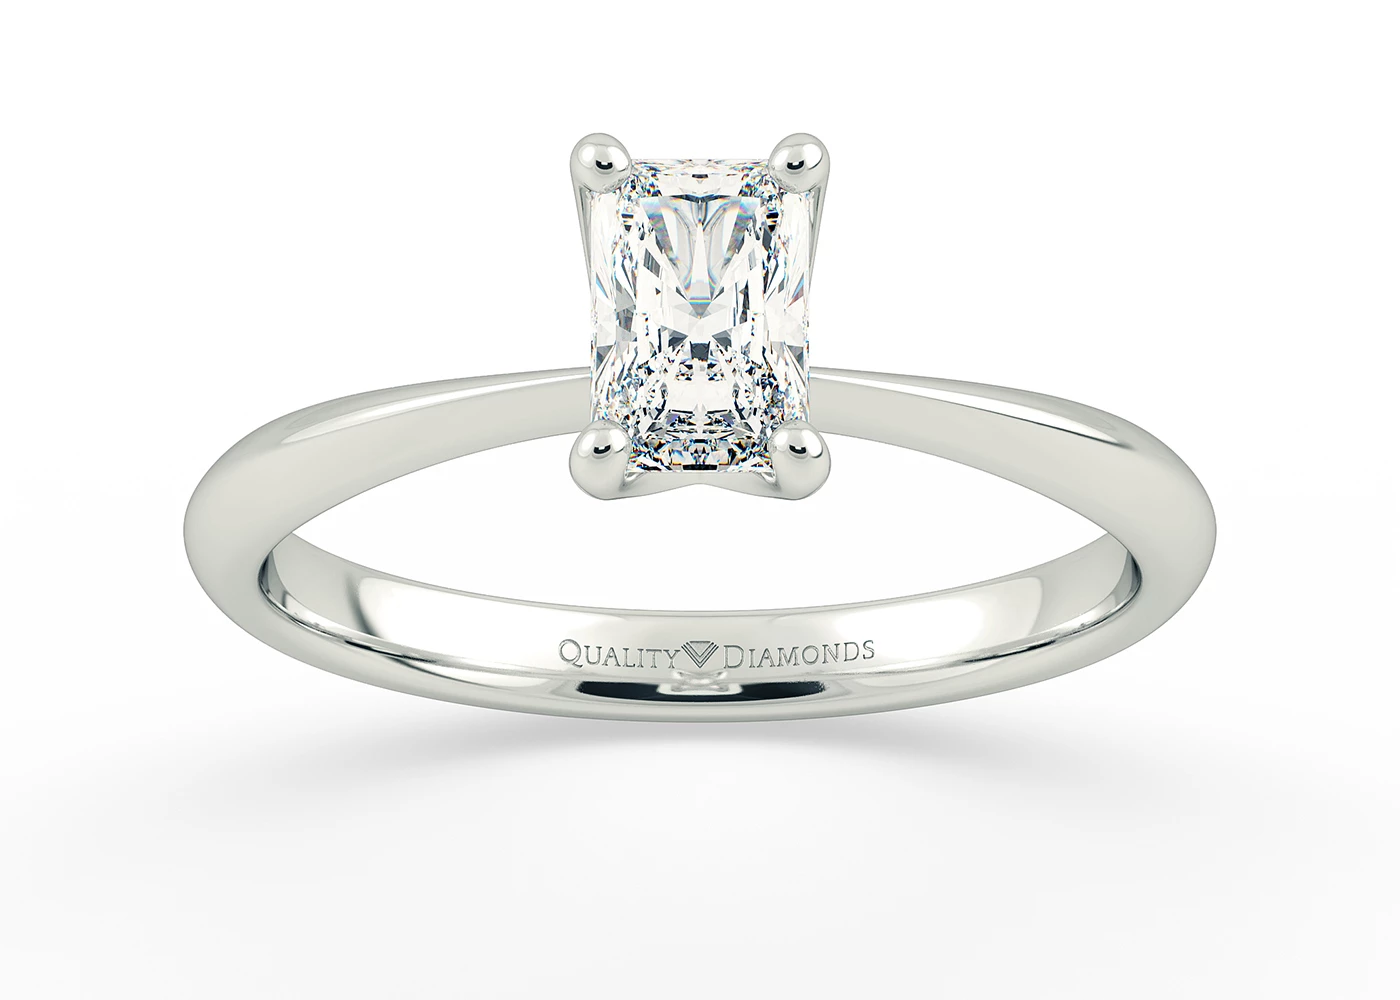 One Carat Radiant Solitaire Diamond Engagement Ring in Platinum 950